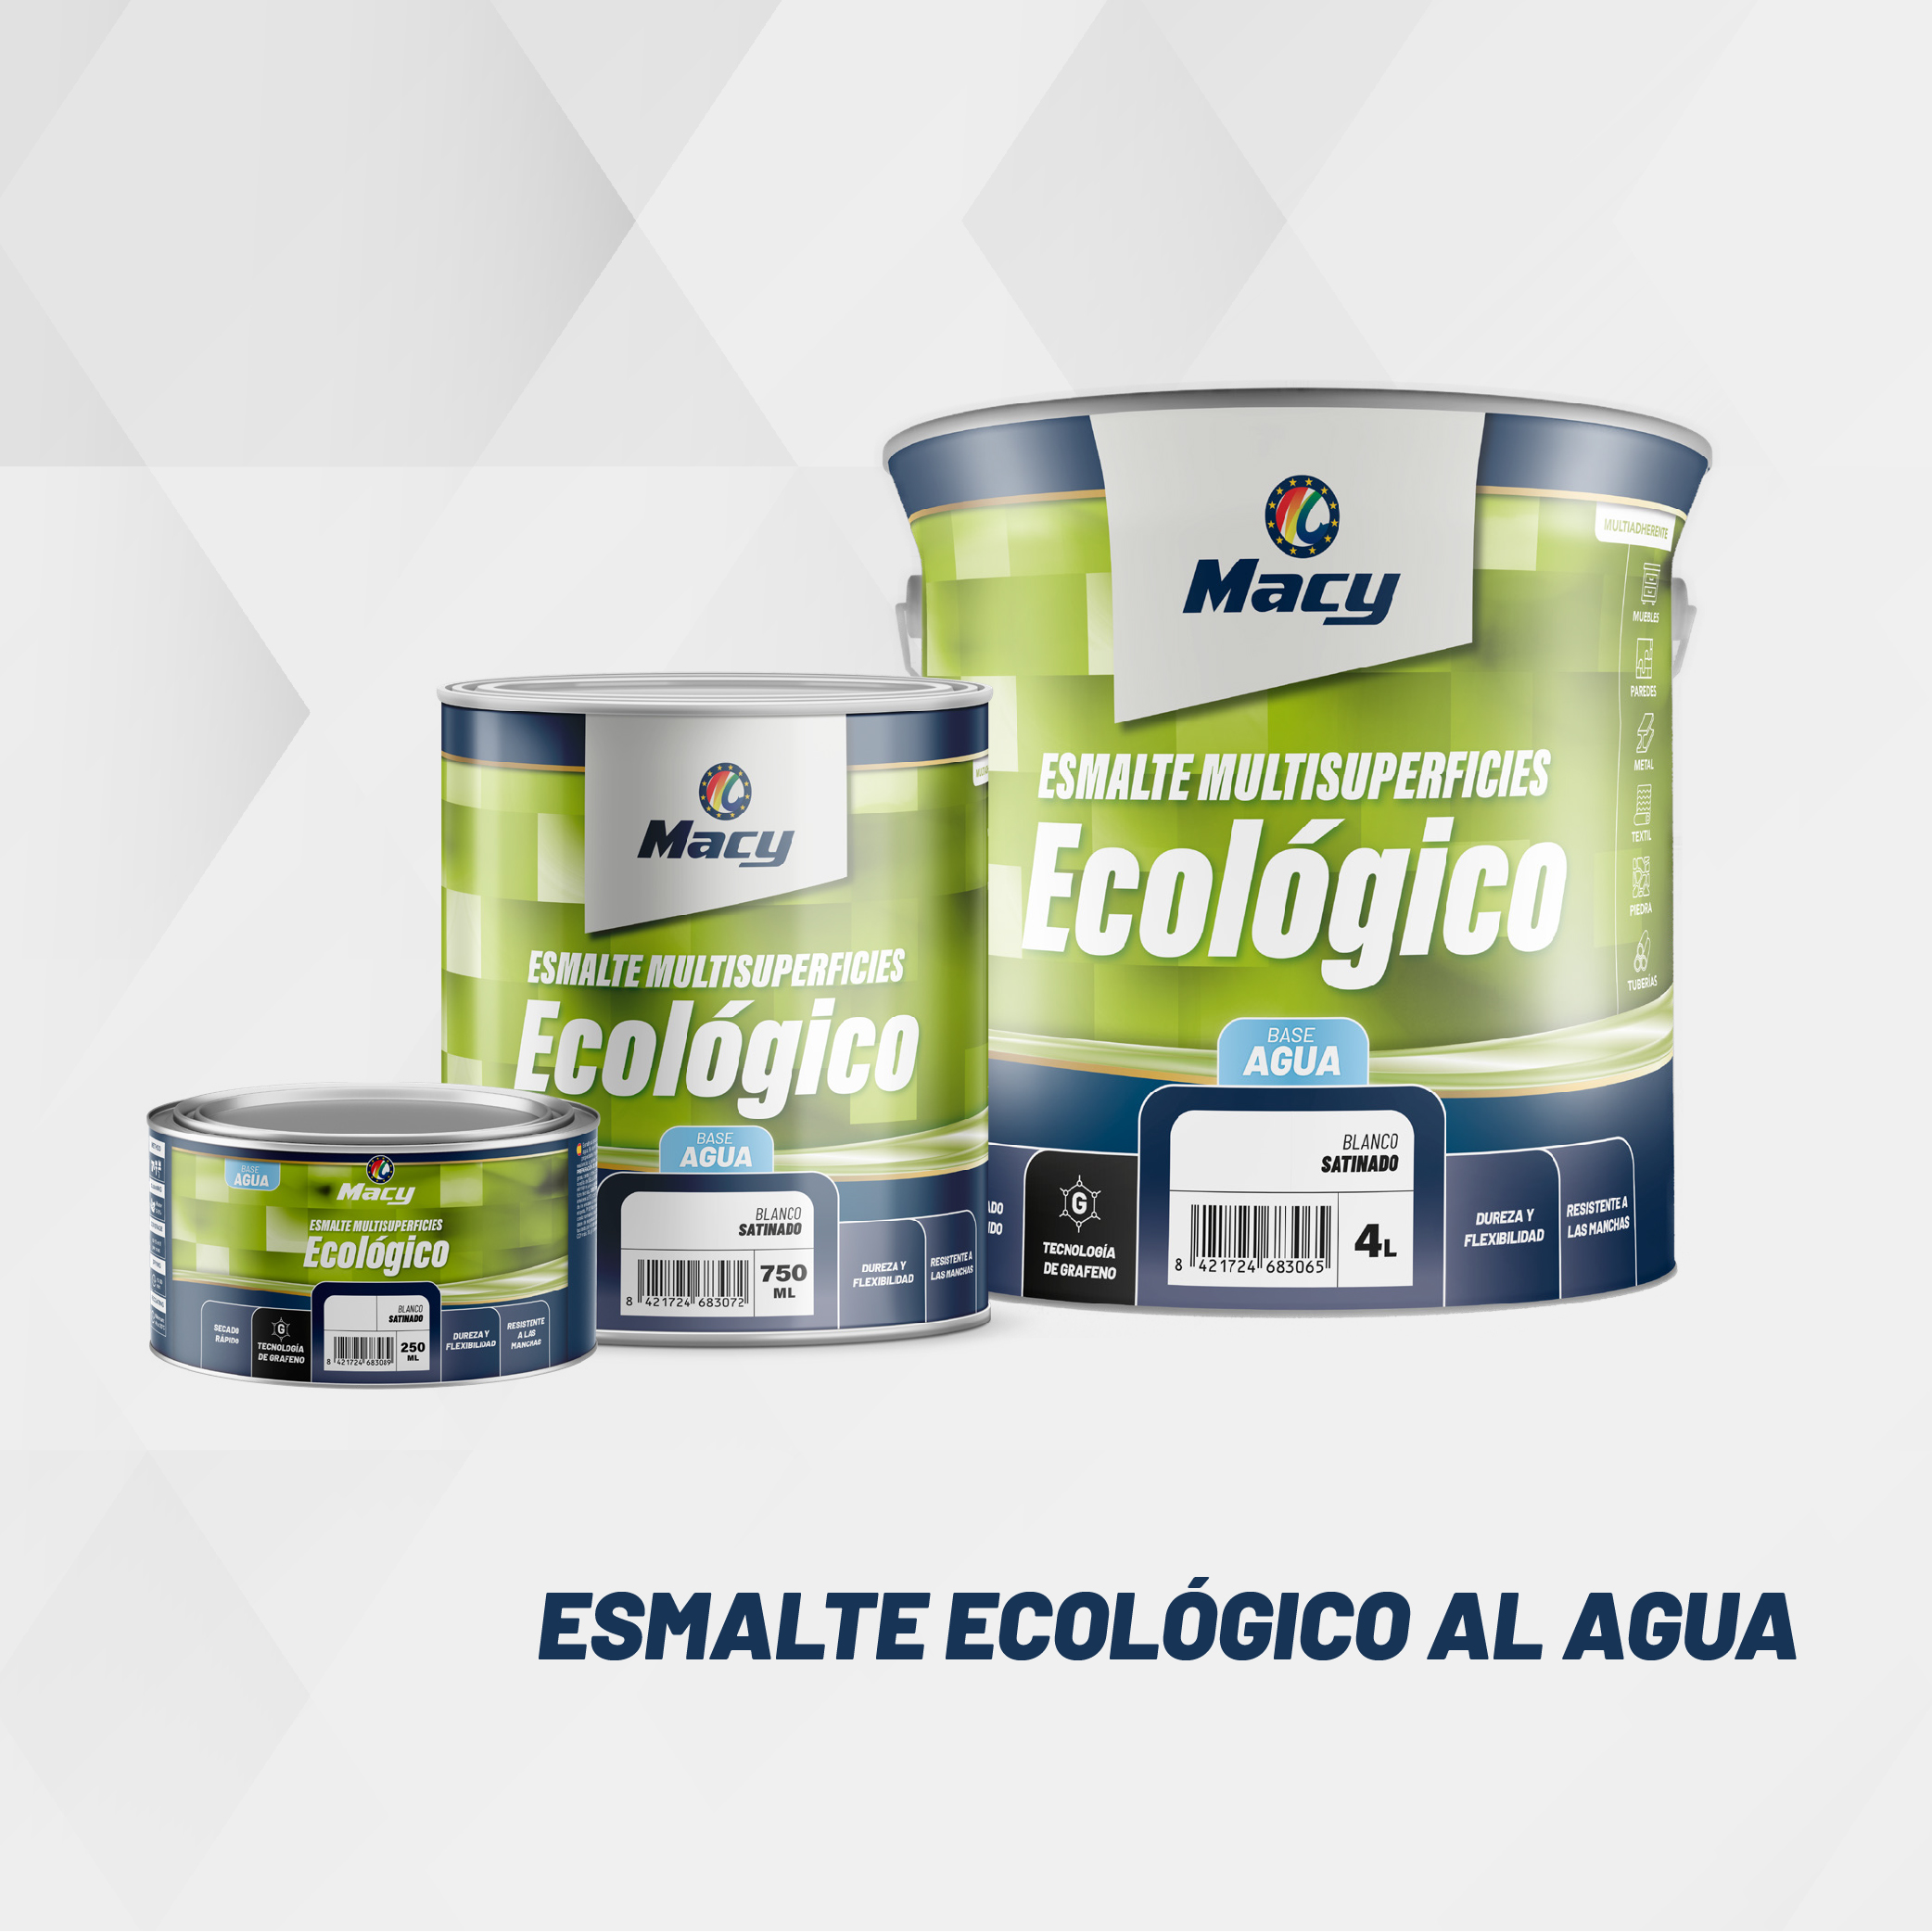 Nuevo Esmalte EcolÃ³gico Macy: mejores resultados y menor impacto ambiental